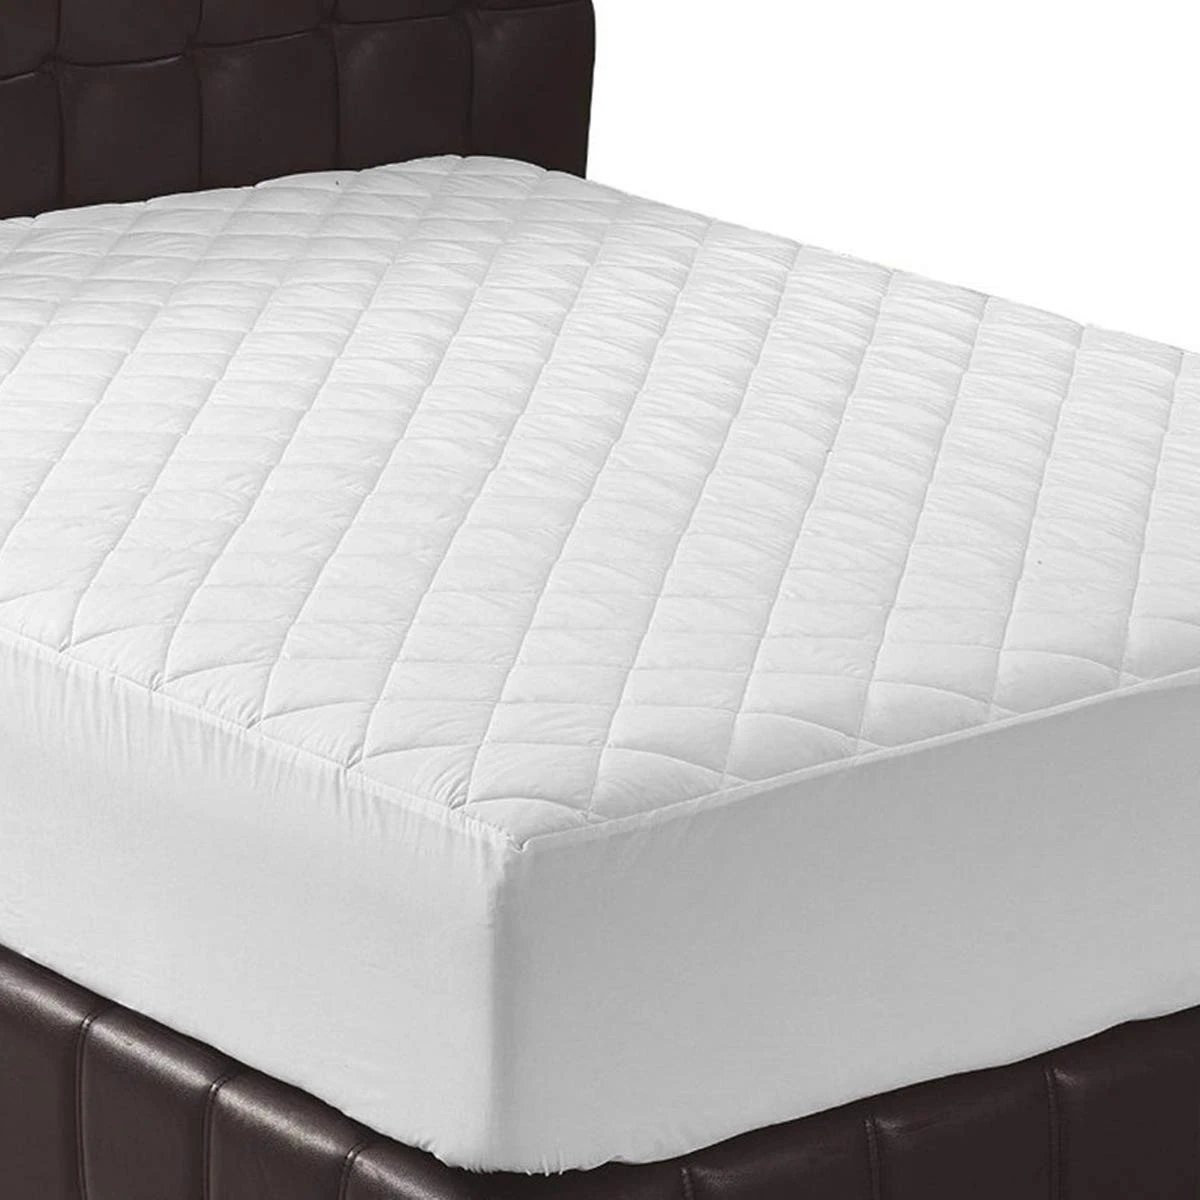 Premium hypoallergenic bed bug waterproof mattress protector